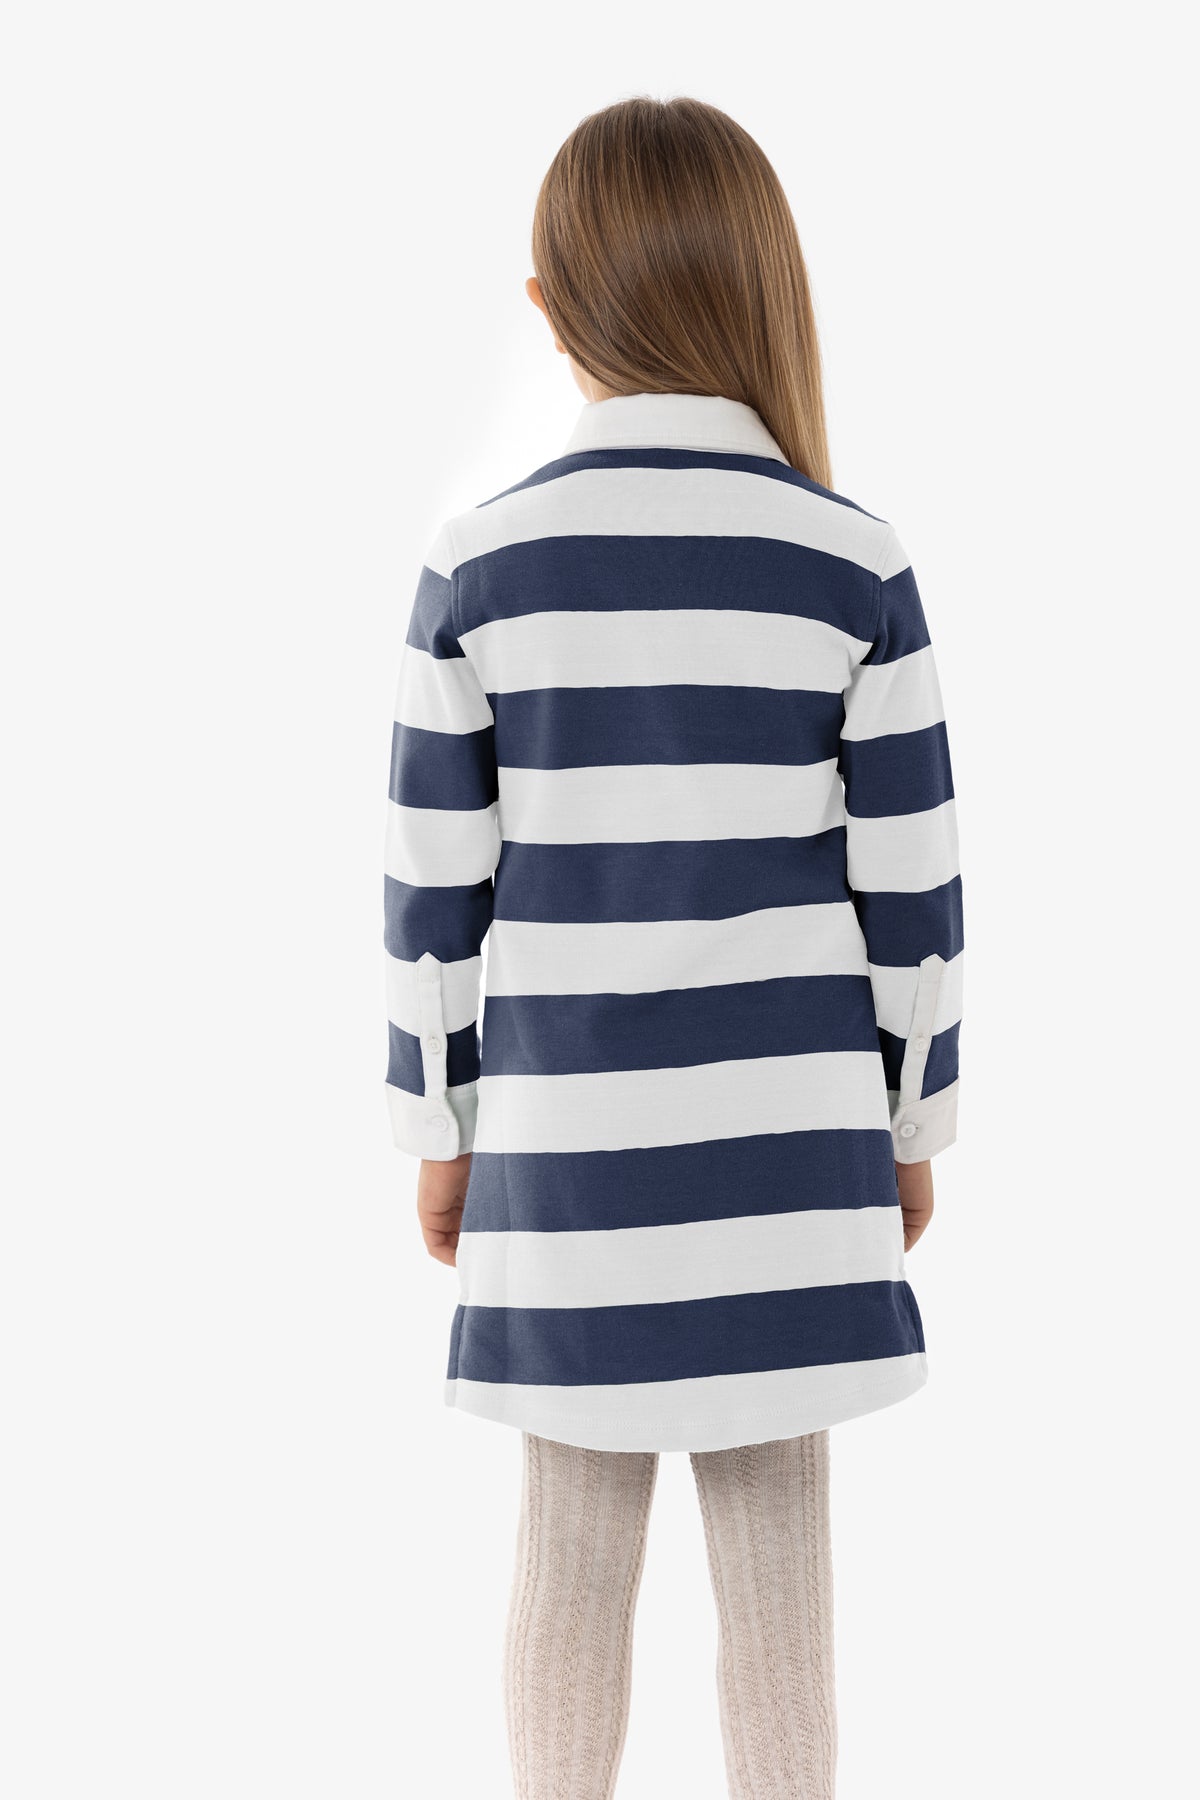 Vestito da bambina in cotone interlock stripe con logo U.S. Polo Assn.